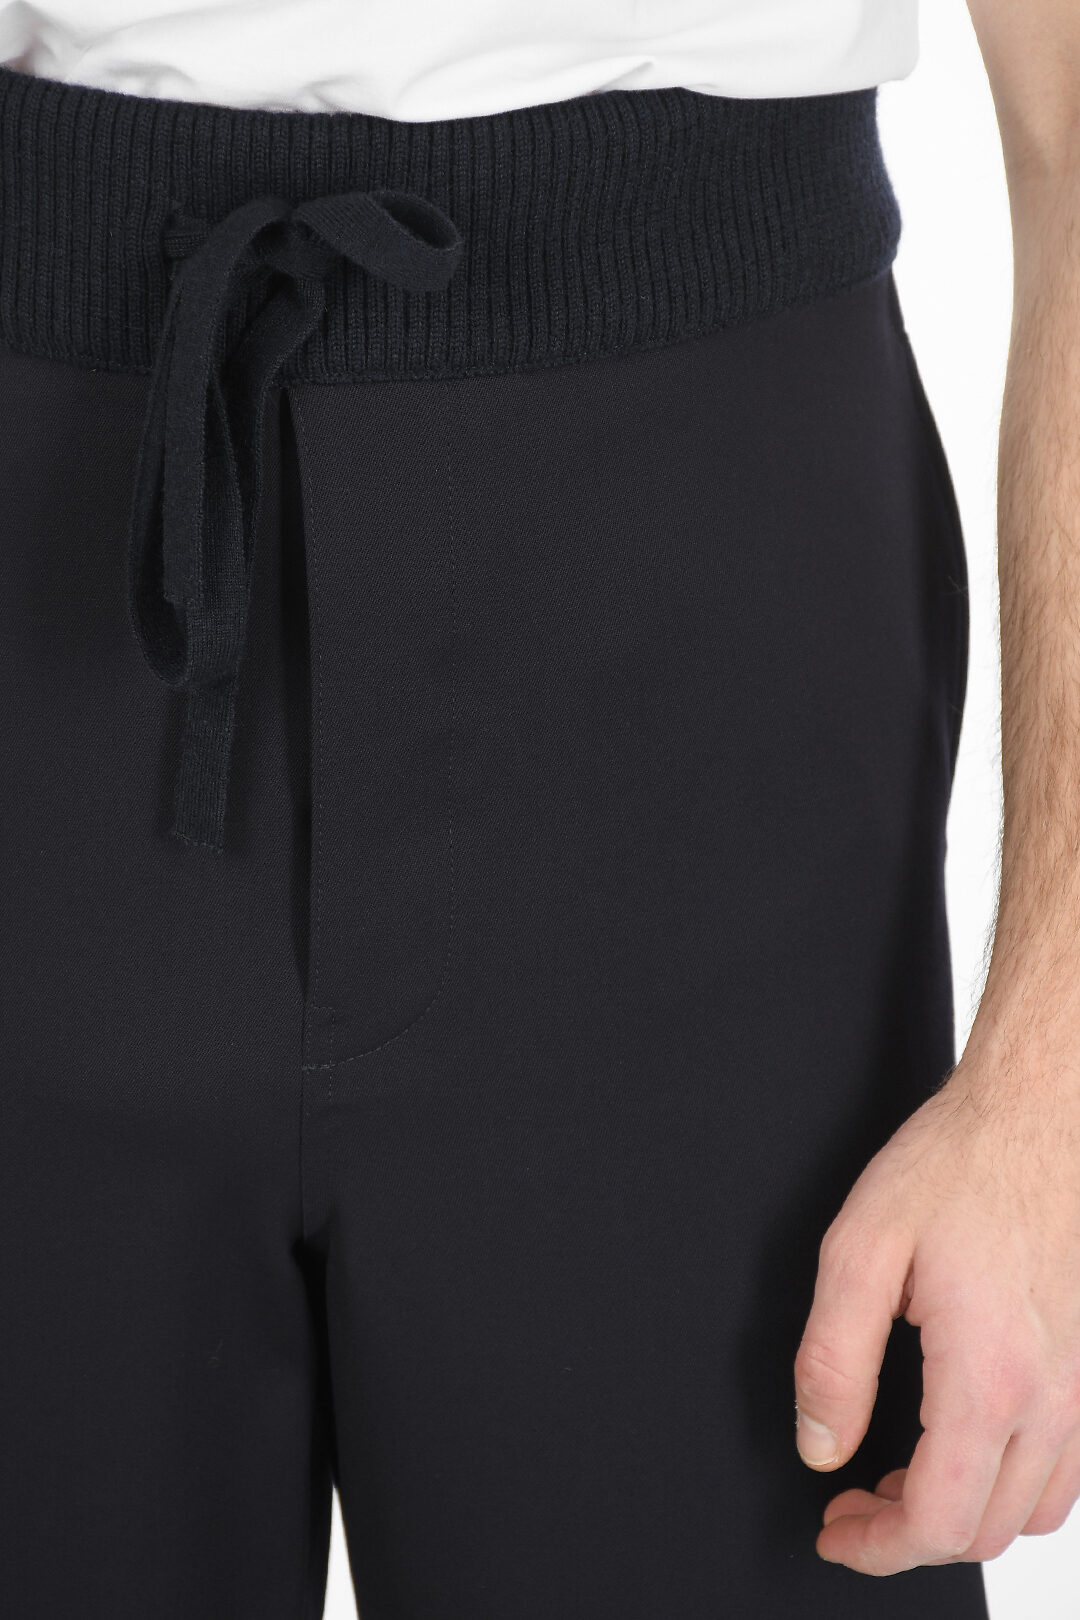 Loewe Drawstring Pants men - Glamood Outlet